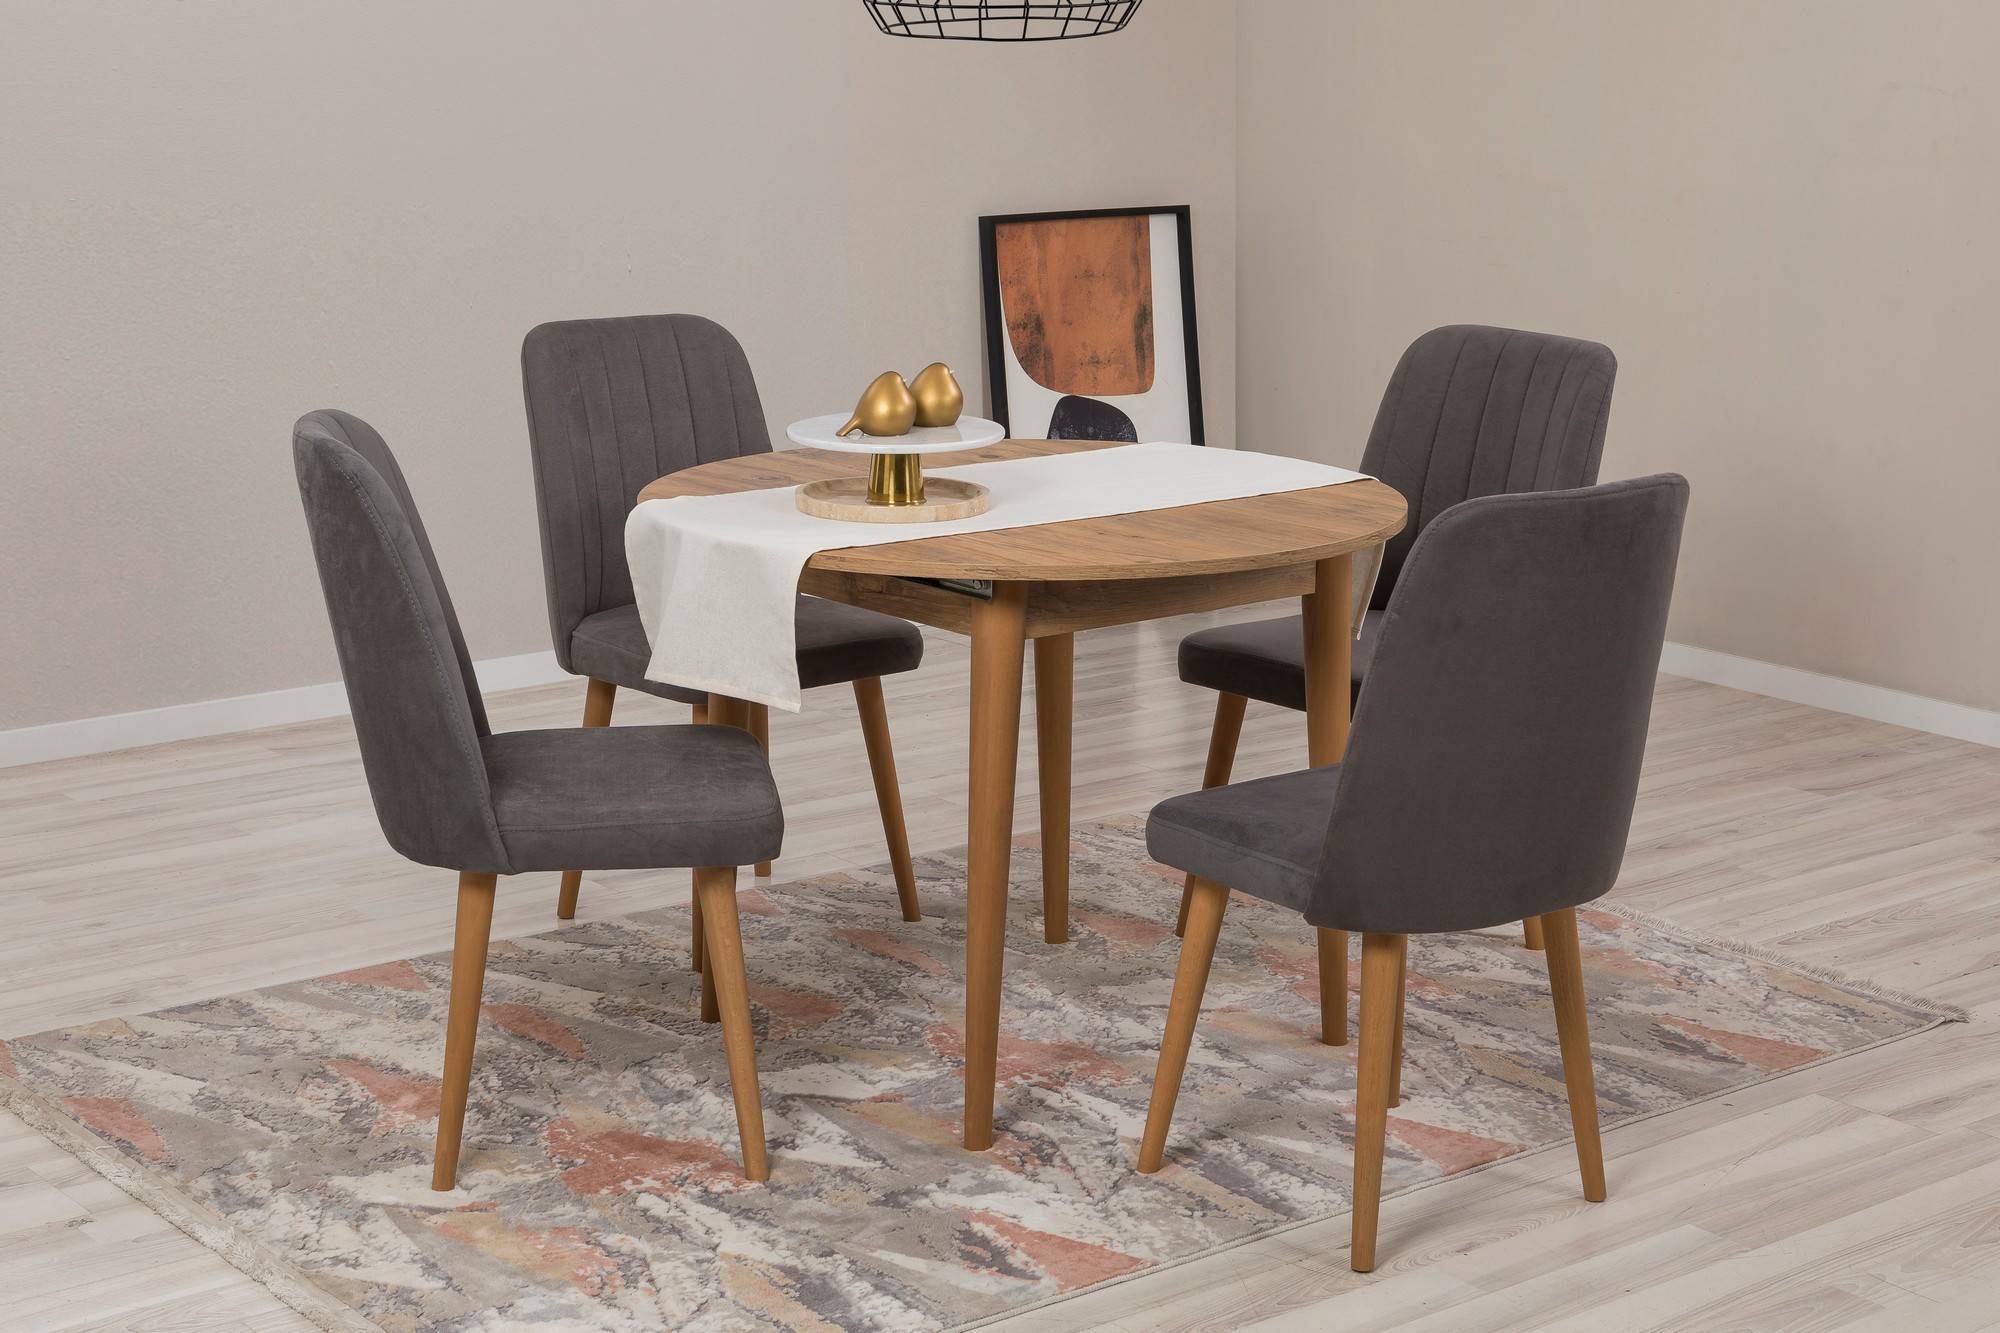 Juego de mesa redonda extensible y 4 sillas Malva en madera clara y tela gris oscuro.